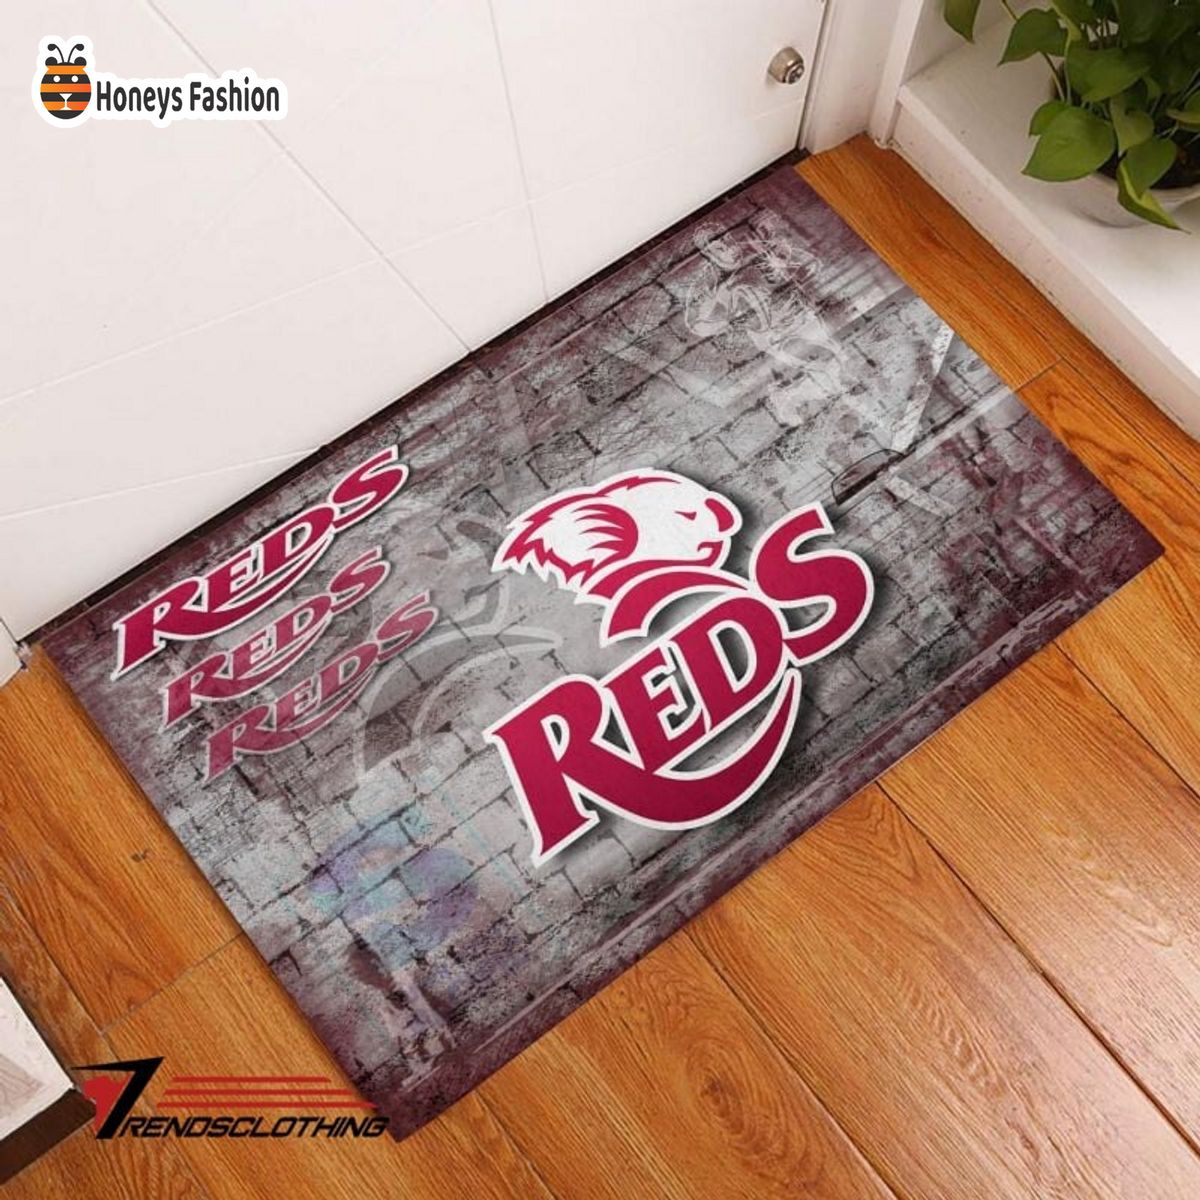 Queensland Reds Super Rugby Doormat